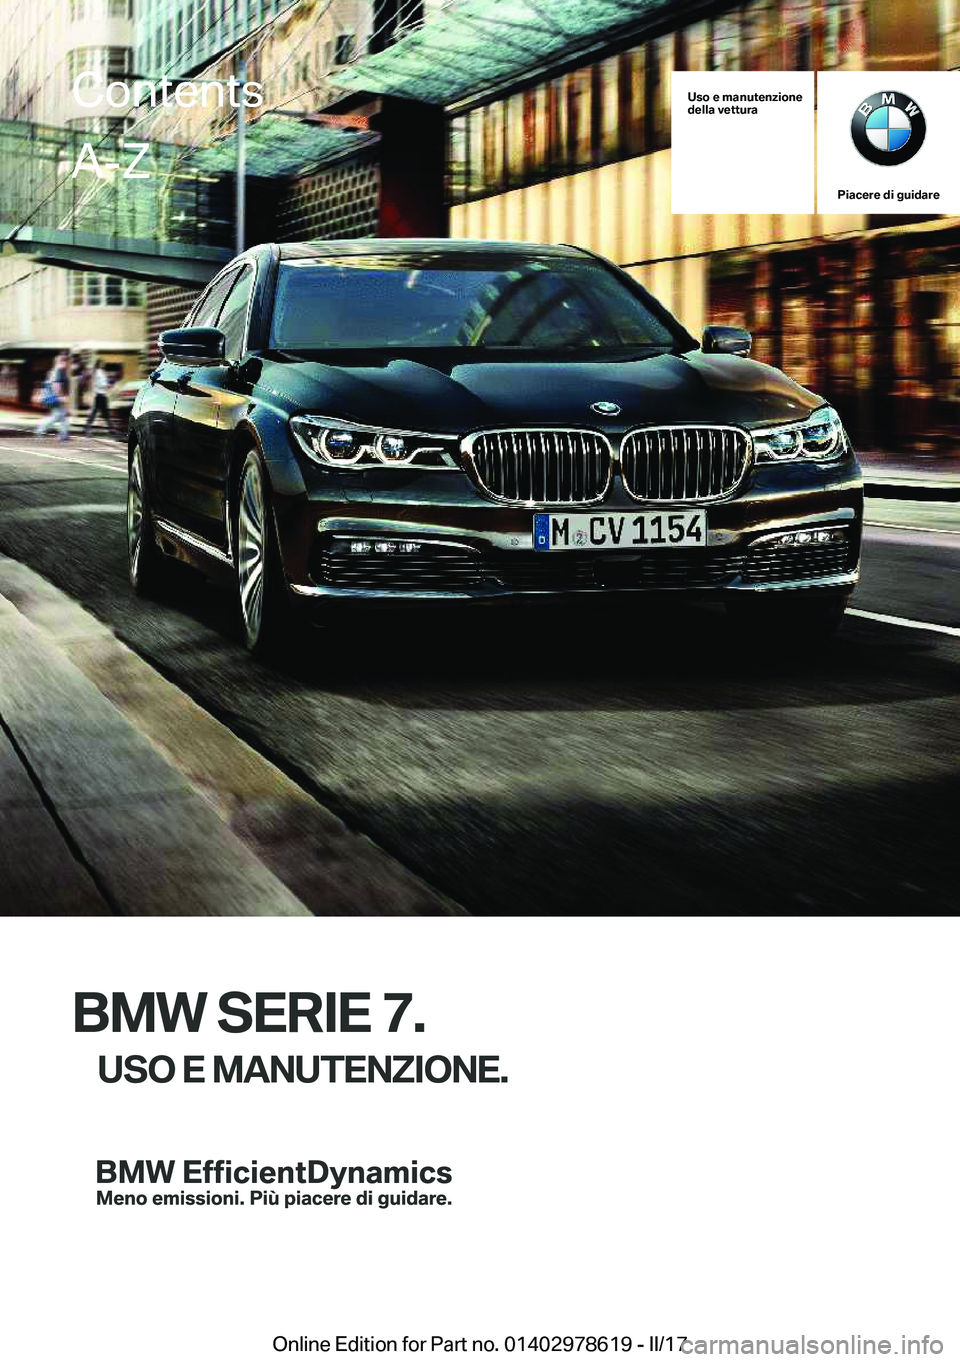 BMW 7 SERIES 2018  Libretti Di Uso E manutenzione (in Italian) �U�s�o��e��m�a�n�u�t�e�n�z�i�o�n�e
�d�e�l�l�a��v�e�t�t�u�r�a
�P�i�a�c�e�r�e��d�i��g�u�i�d�a�r�e
�B�M�W��S�E�R�I�E��7�.
�U�S�O��E��M�A�N�U�T�E�N�Z�I�O�N�E�.
�C�o�n�t�e�n�t�s�A�-�Z
�O�n�l�i�n�e